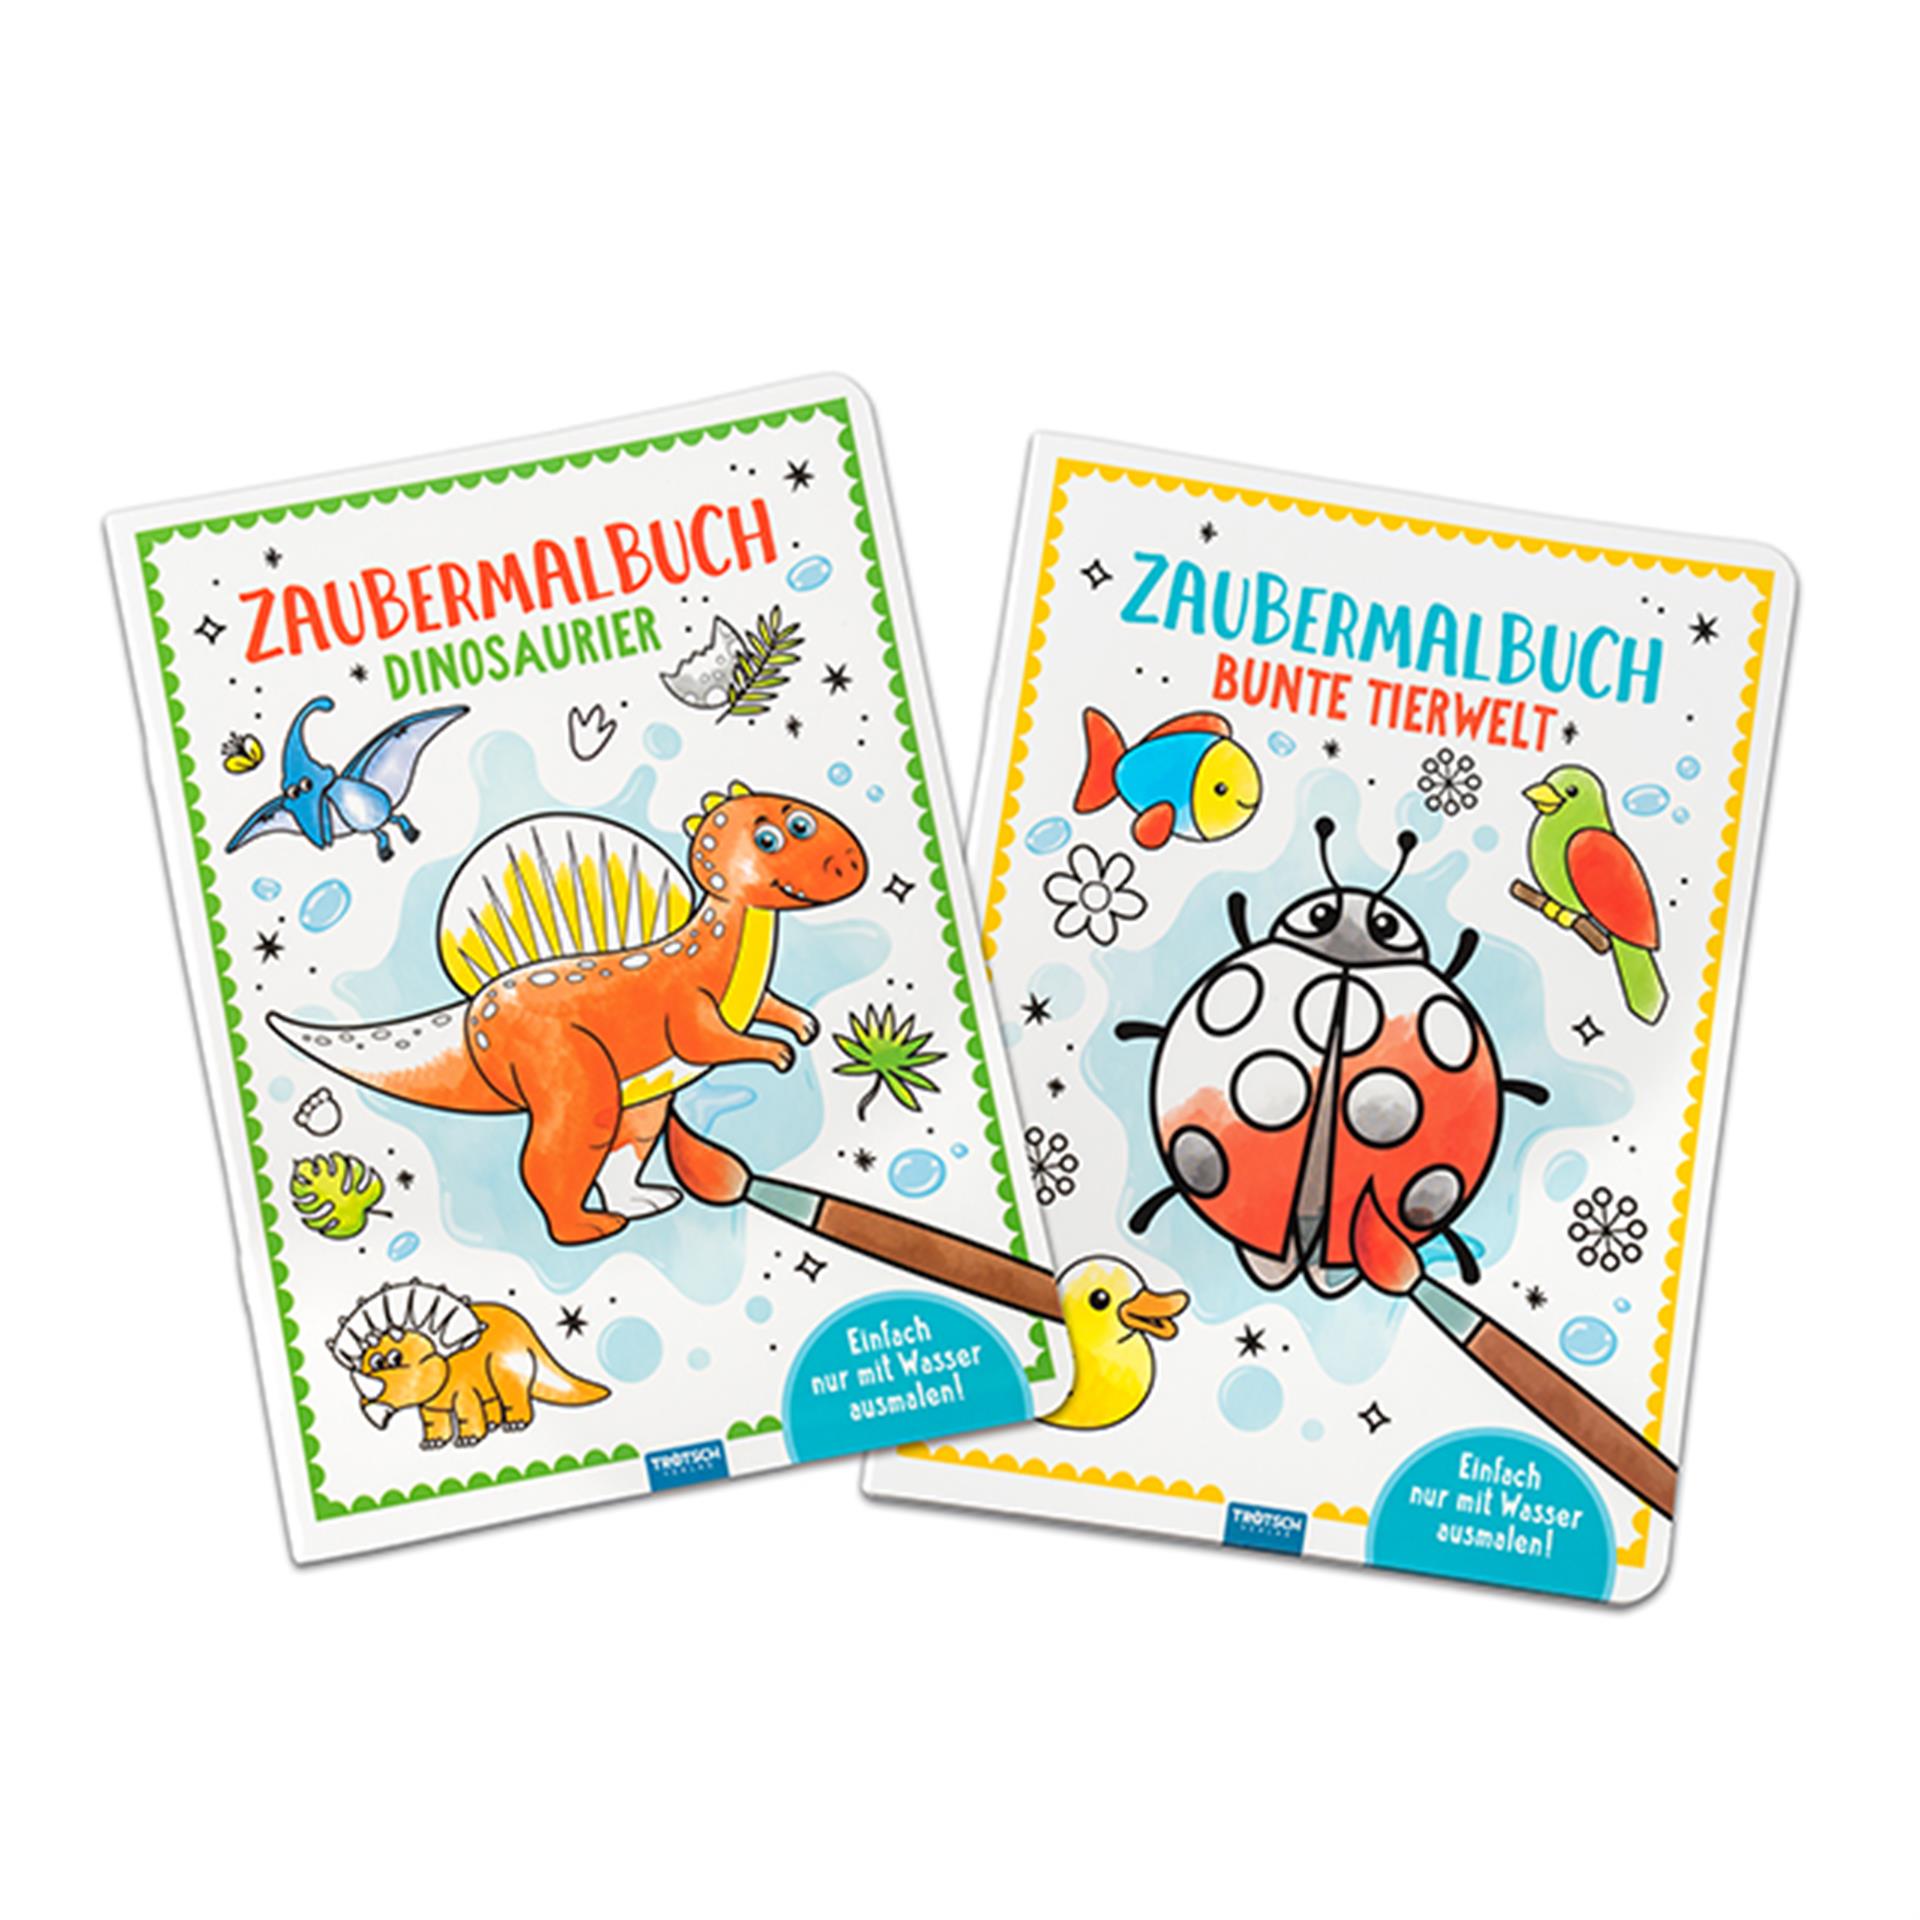 Zaubermalbuch Dino und Bunte Tierwelt 2 Stk.